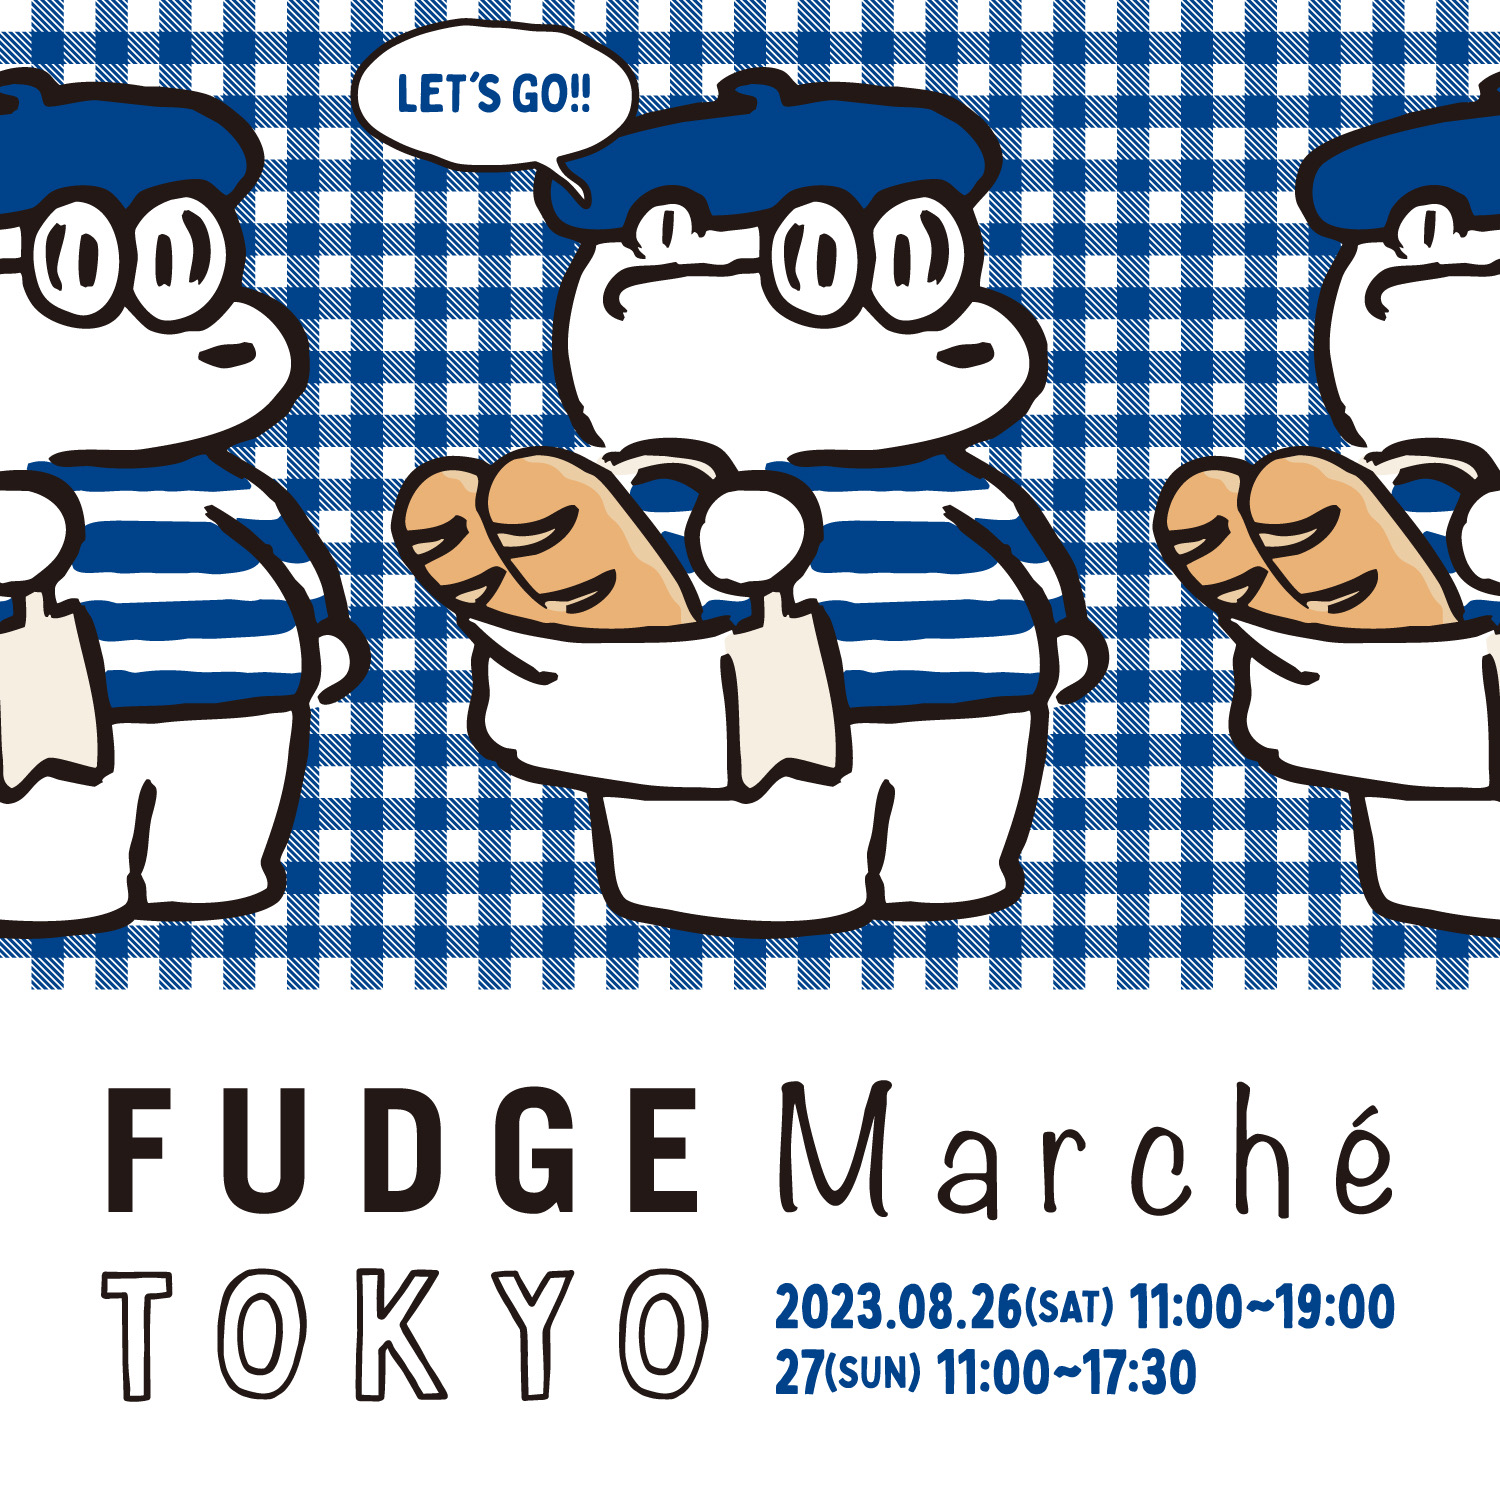 FUDGEmarcheが東京で初開催